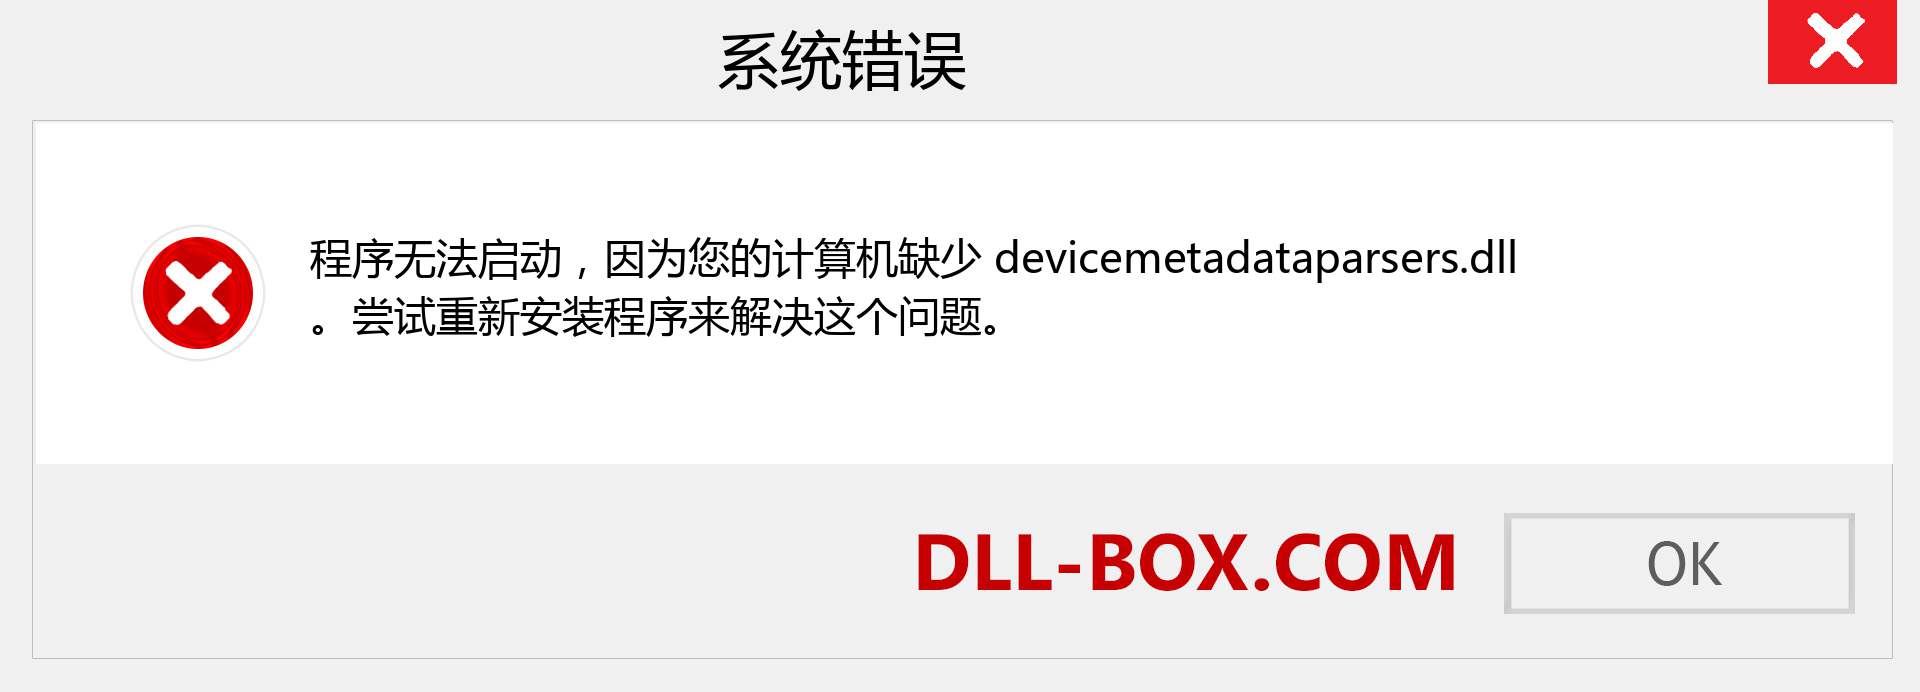 devicemetadataparsers.dll 文件丢失？。 适用于 Windows 7、8、10 的下载 - 修复 Windows、照片、图像上的 devicemetadataparsers dll 丢失错误